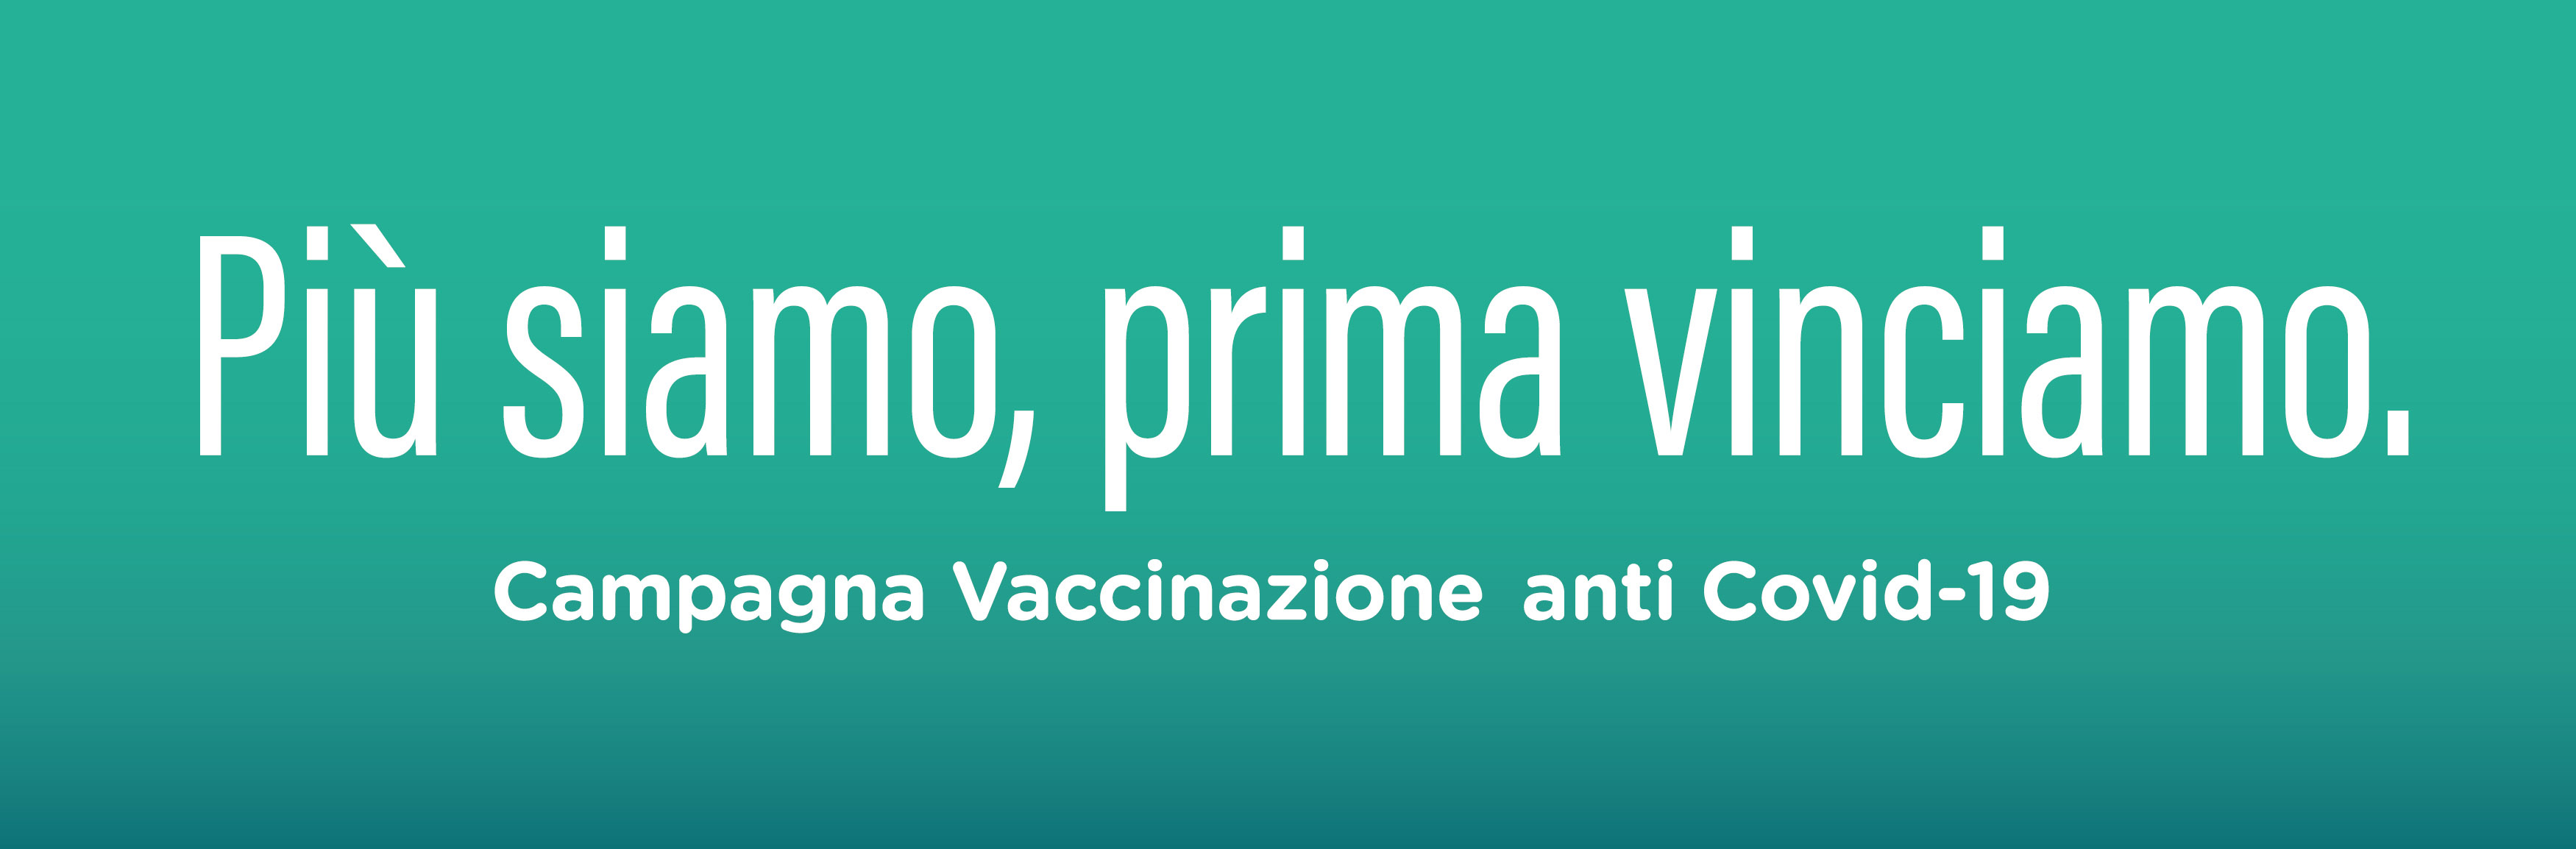 Campagna vaccinazione anti Covid-19